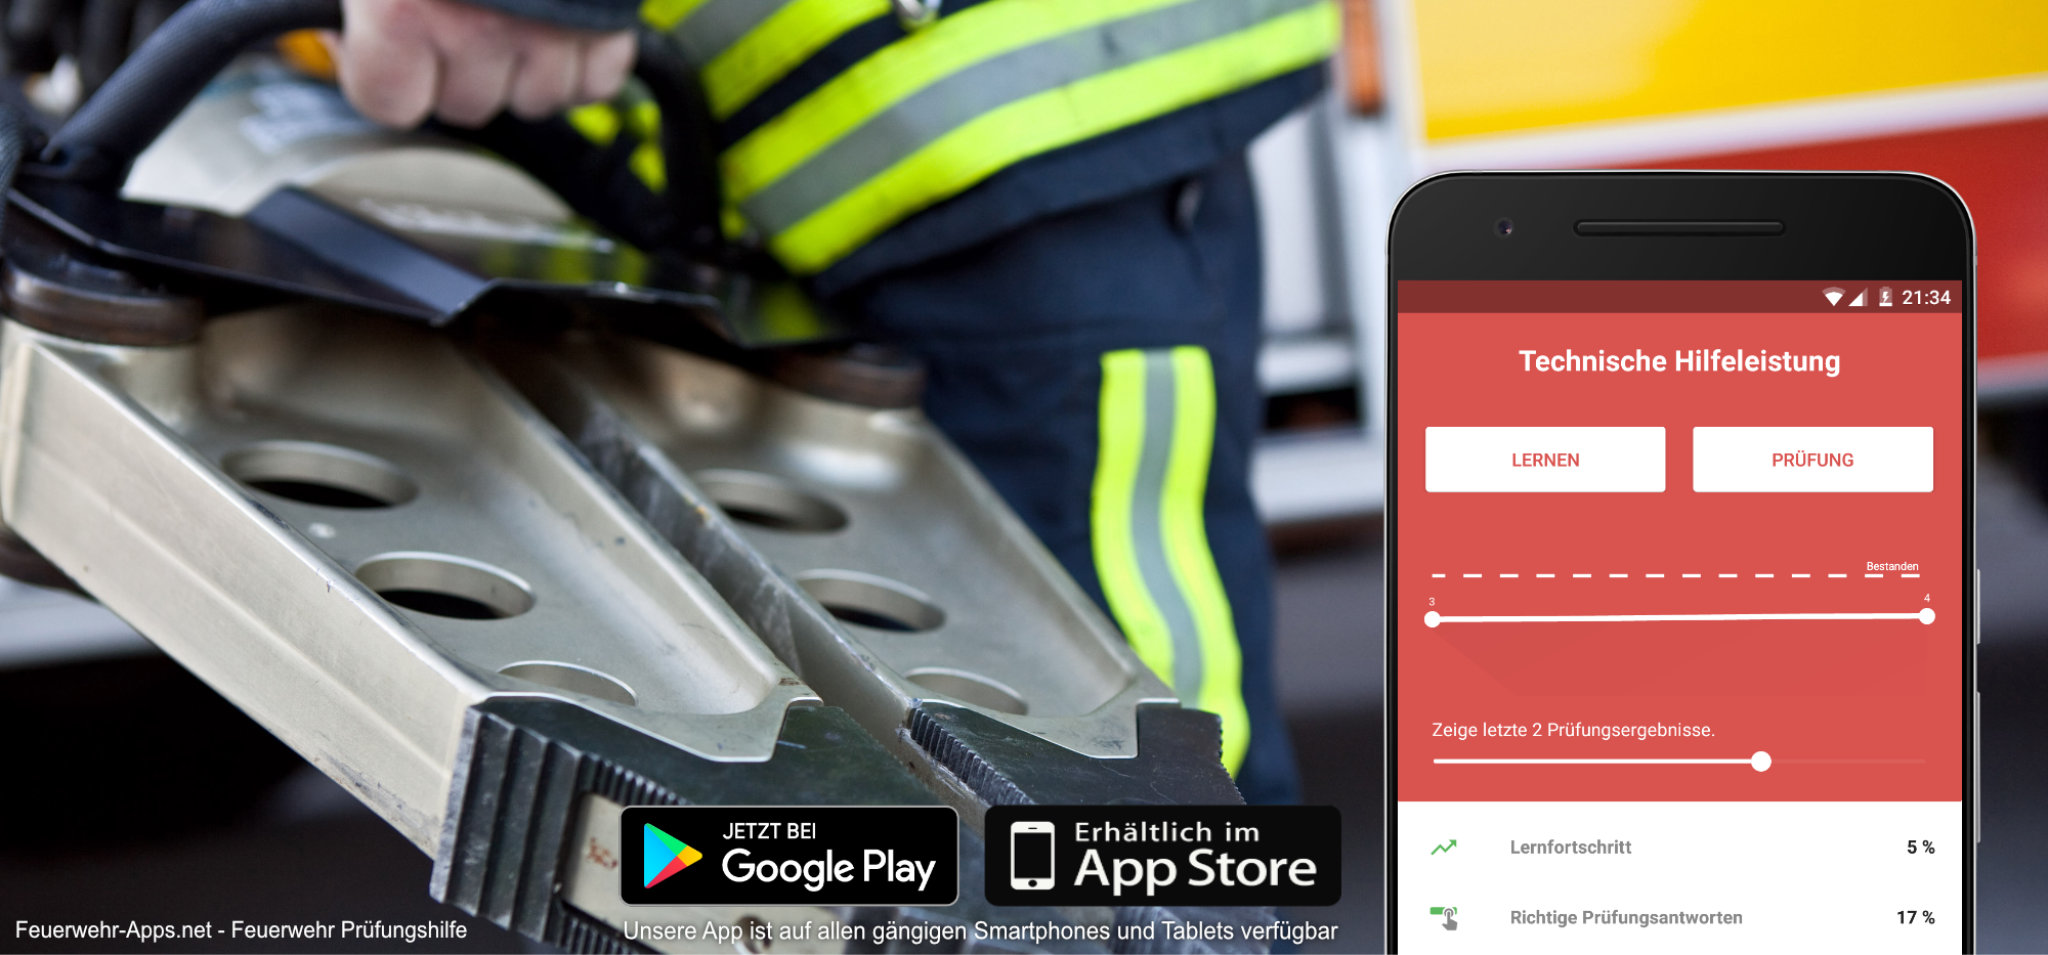 Technische Hilfeleistung - Feuerwehr Prüfungshilfe App